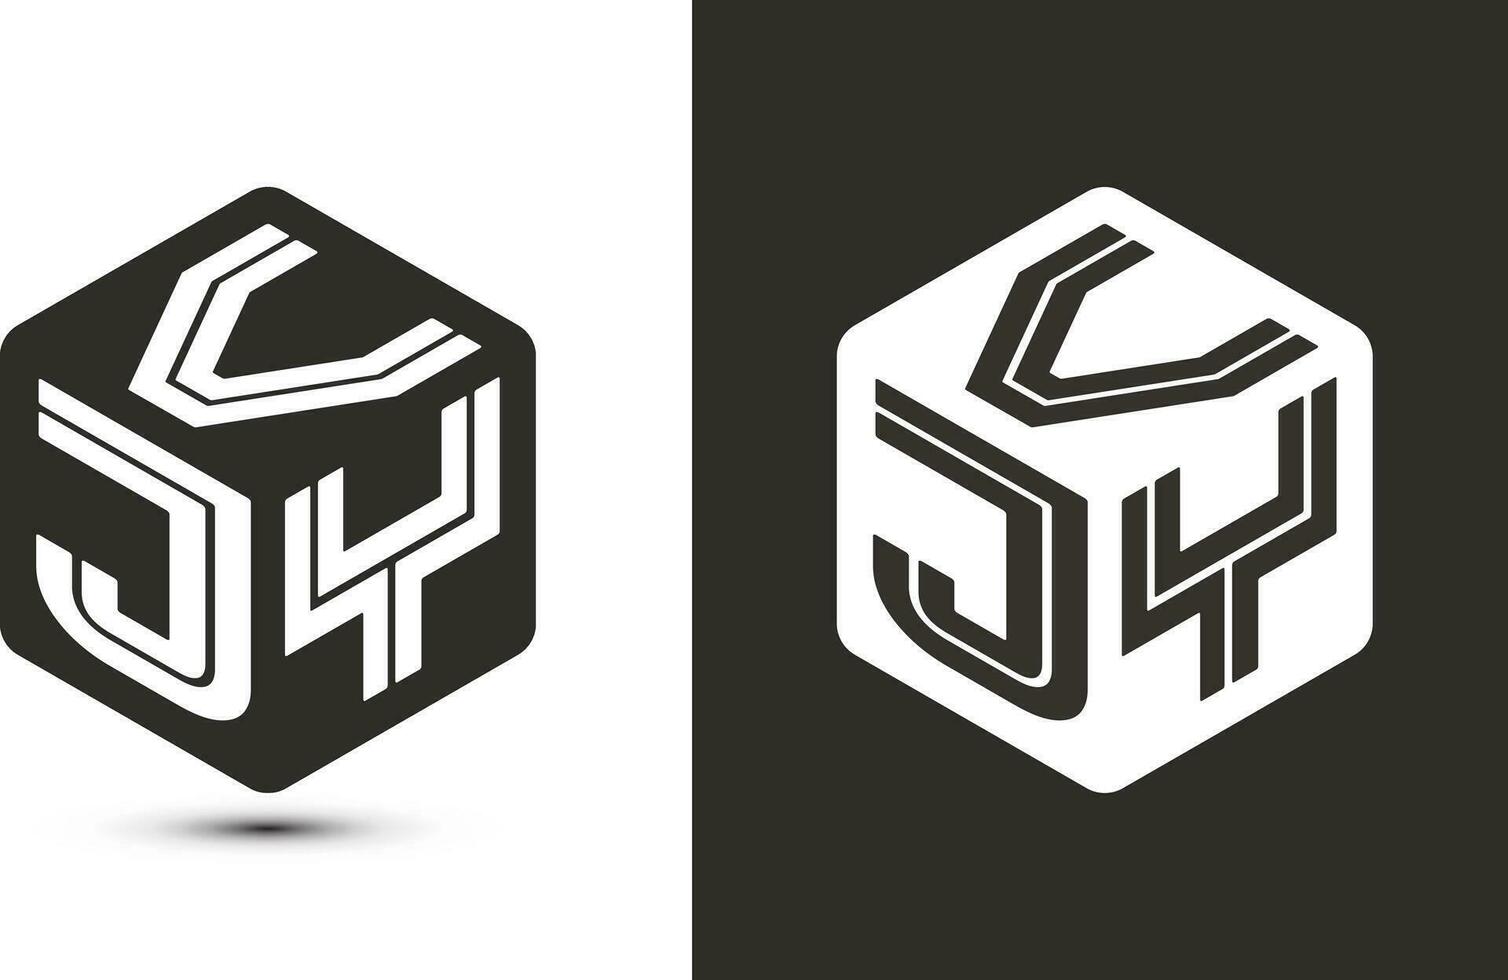 vjy brief logo ontwerp met illustrator kubus logo, vector logo modern alfabet doopvont overlappen stijl.